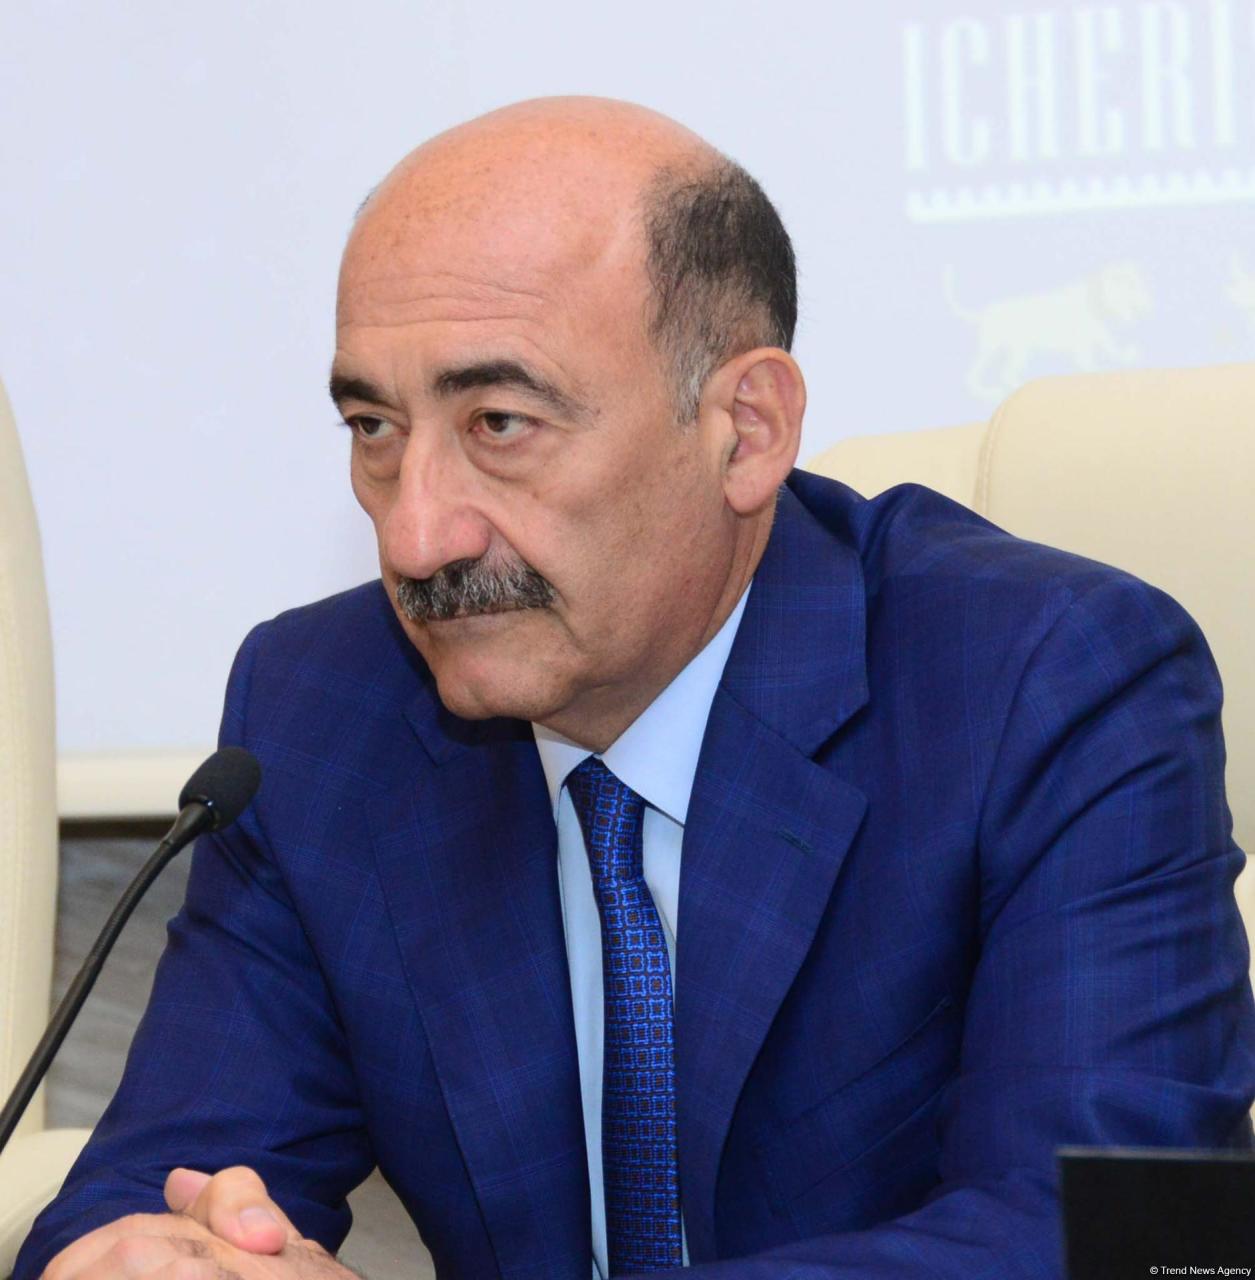 Абульфас Гараев: Проведение 43-й сессии Комитета Всемирного наследия в Баку - знак высокой оценки Азербайджана